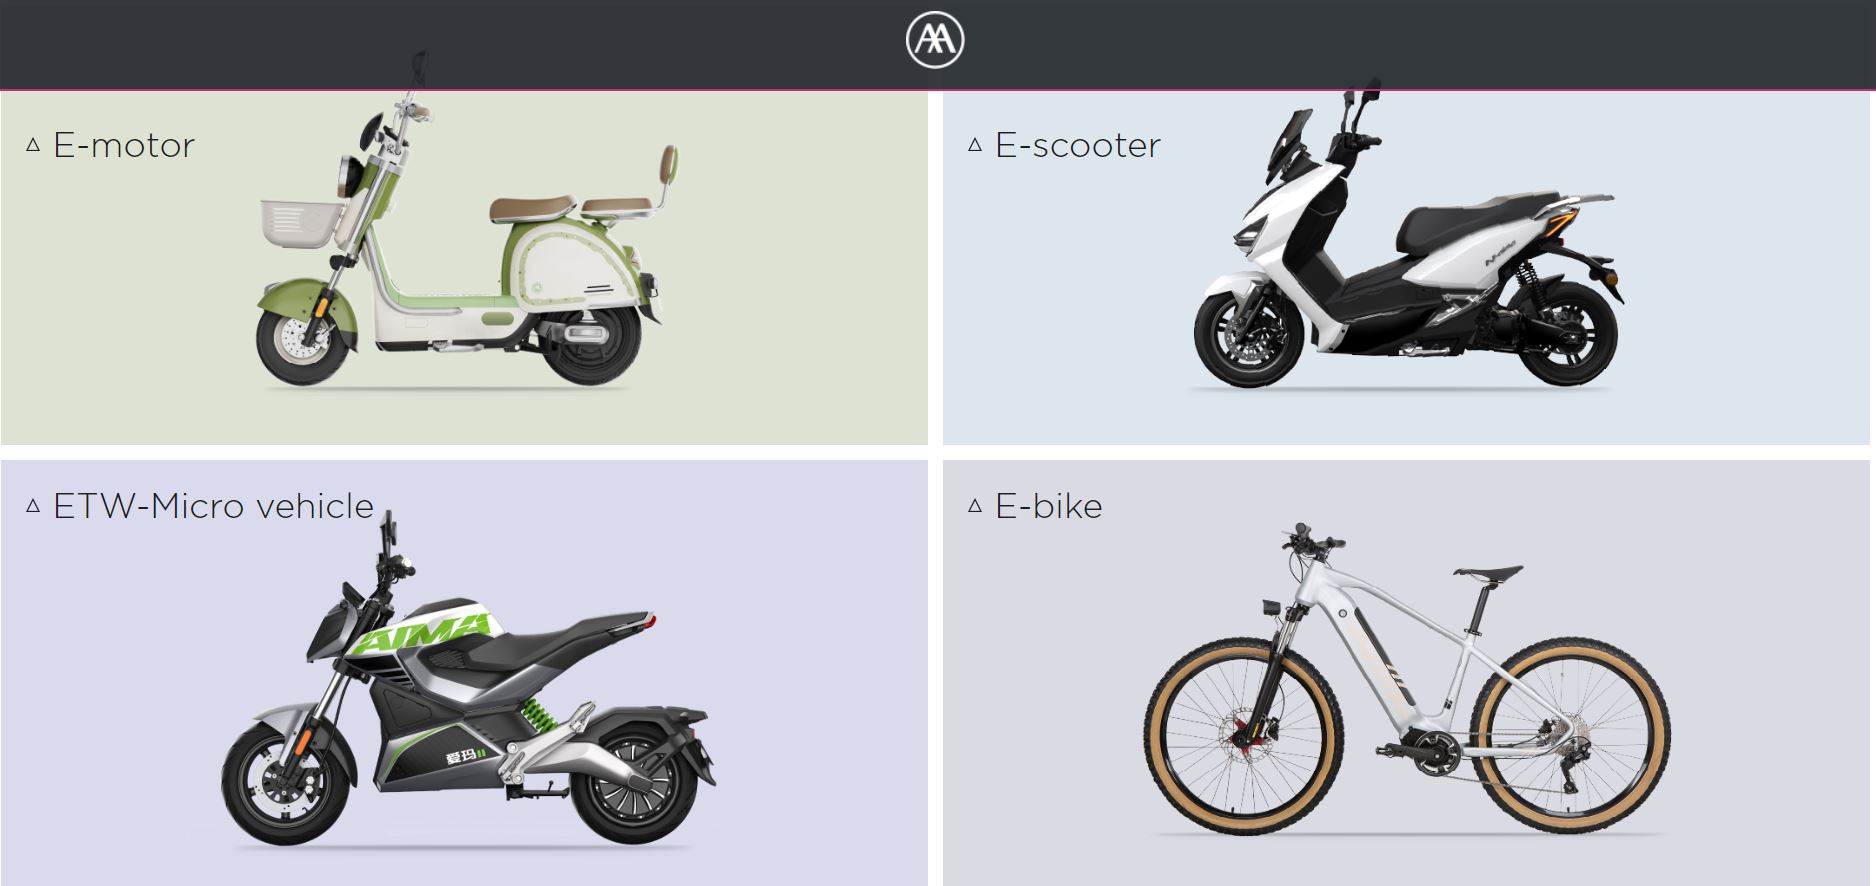 AIMA est un fabricant spécialisé dans les scooters électriques et présente quatre modèles différents.